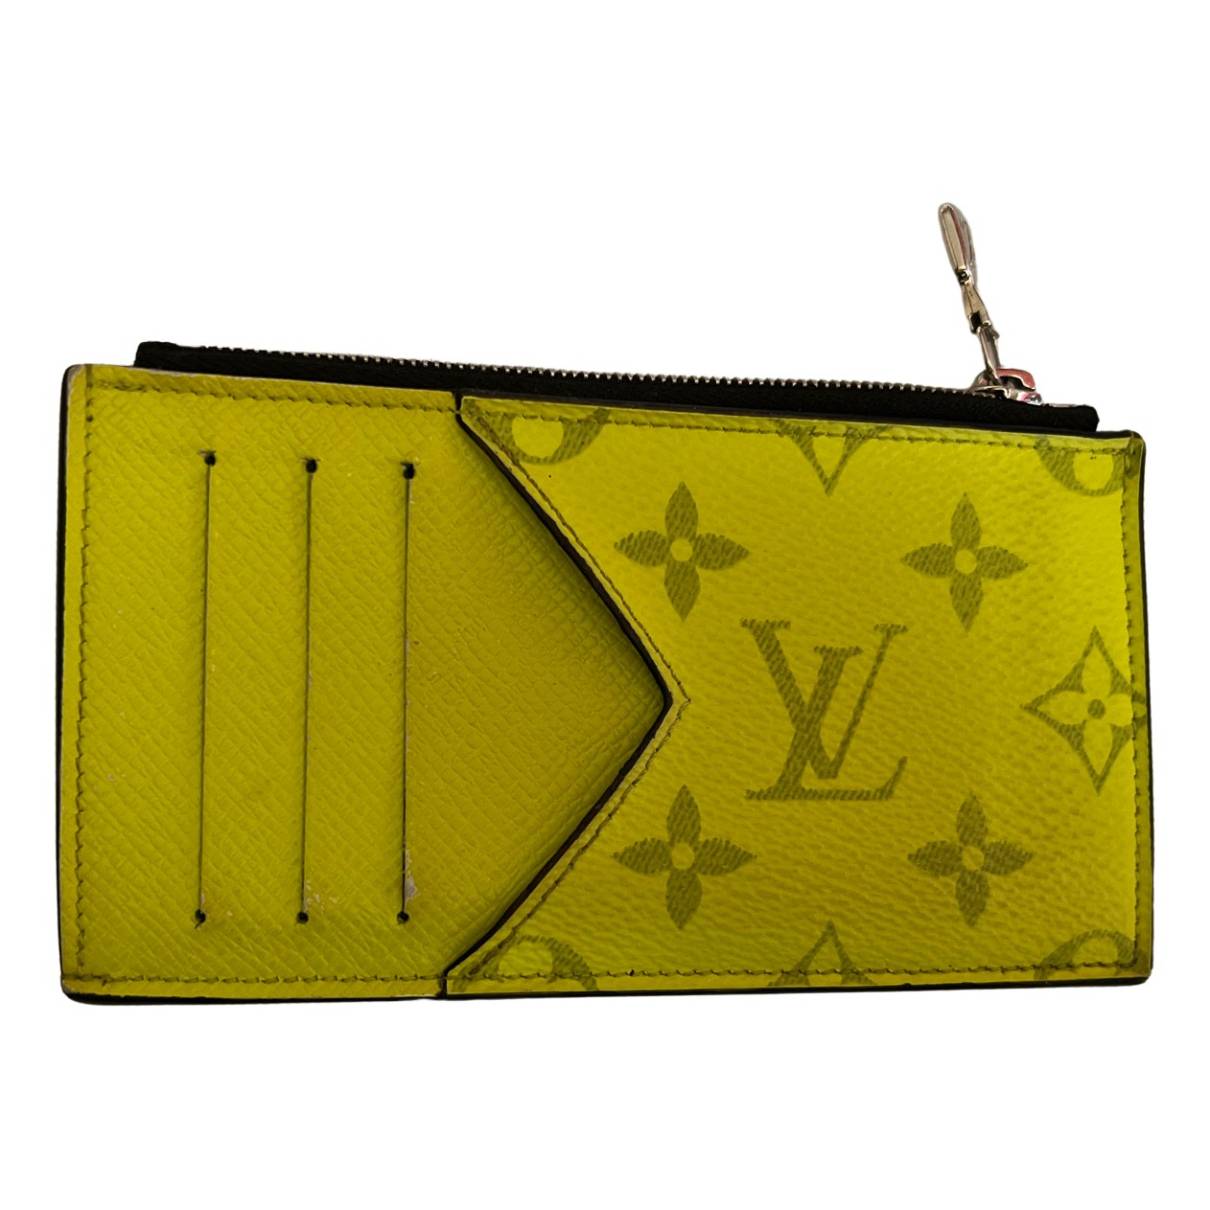 Louis Vuitton Kleinlederwaren aus Segeltuch - Grau - 35633734